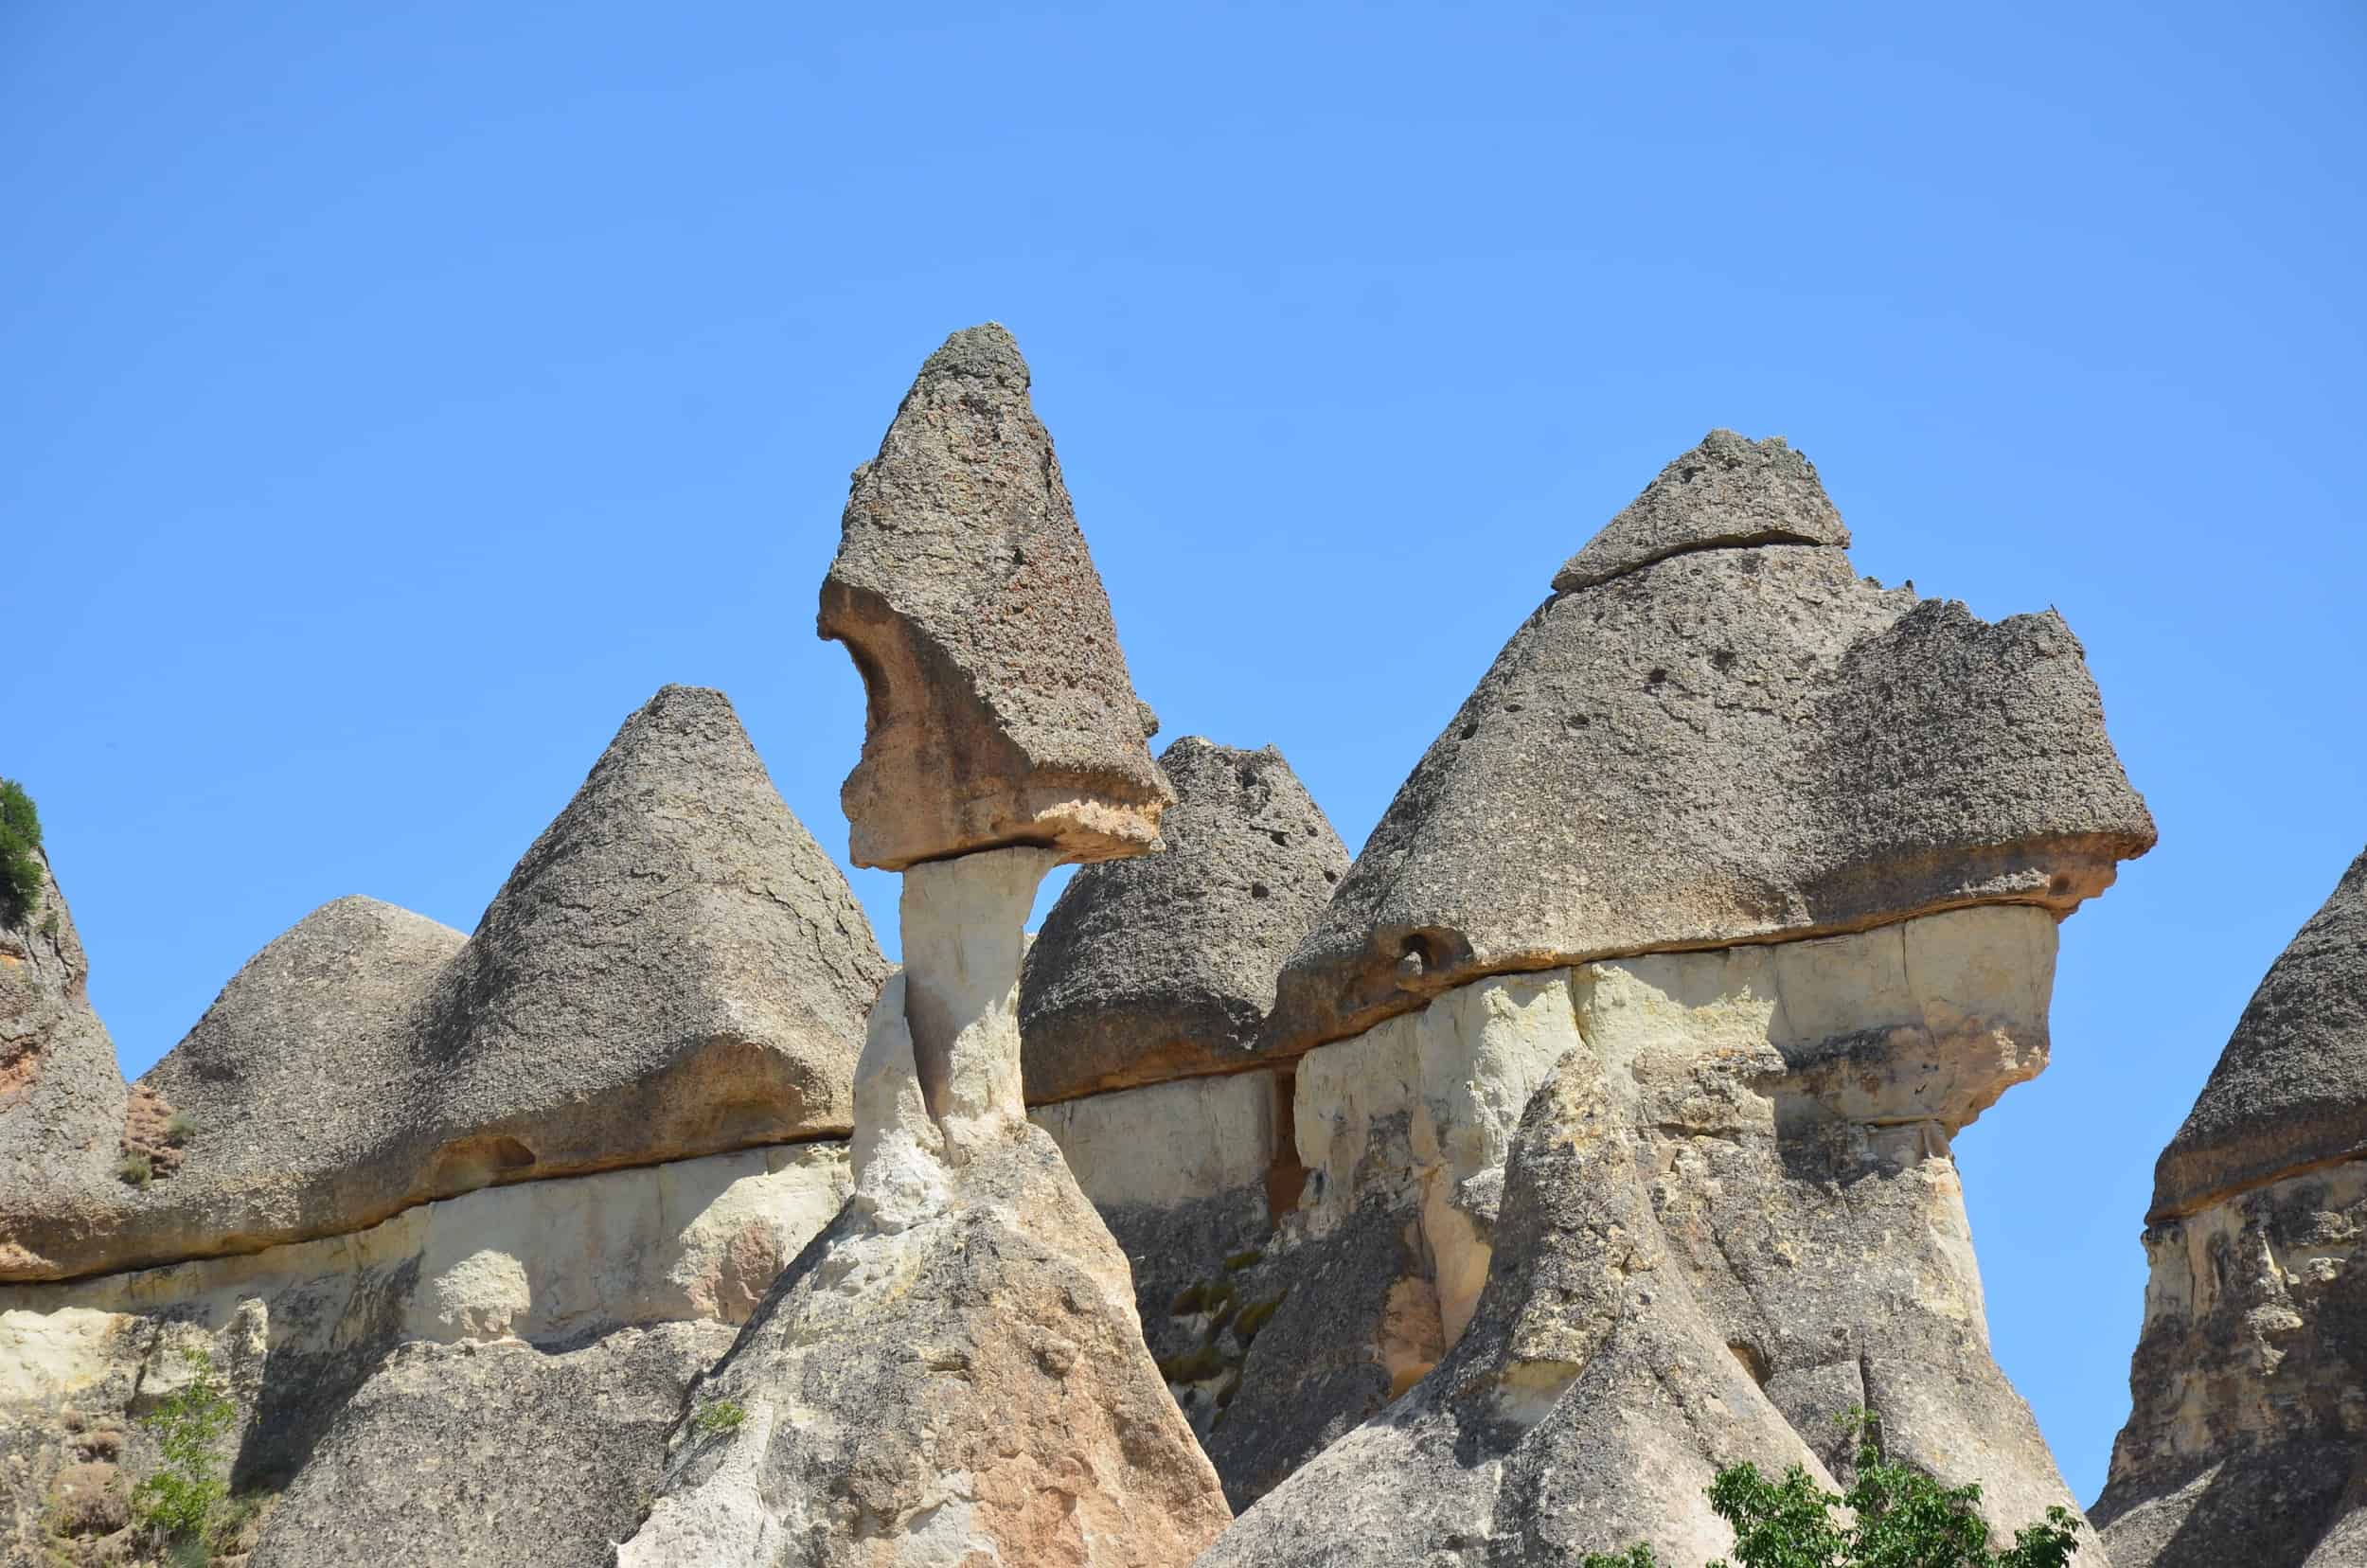 Mushroom-capped fairy chimney at Paşabağ (Monk's Valley) in Cappadocia, Turkey